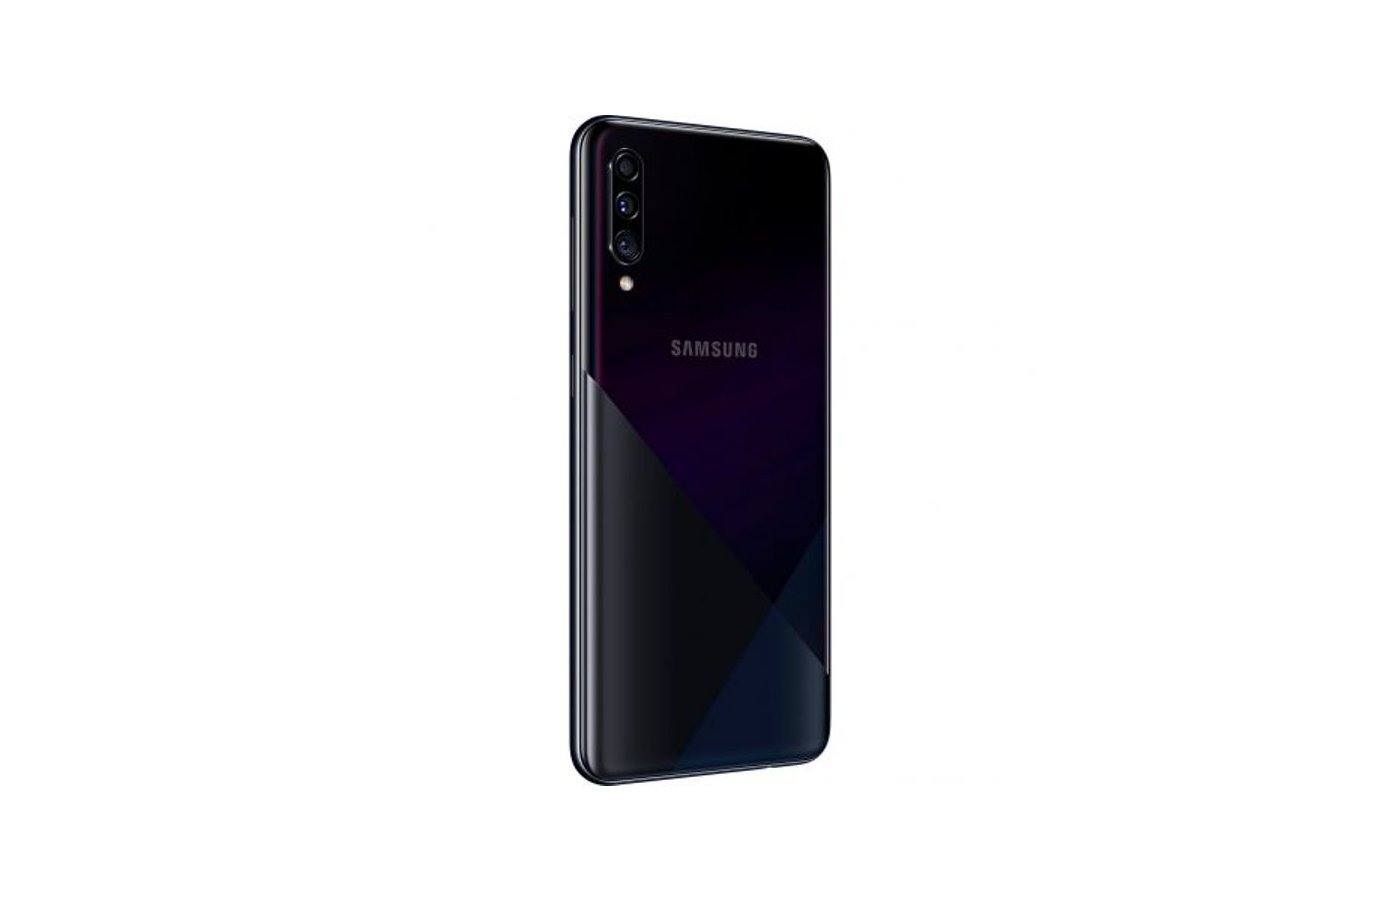 Смартфон Samsung Galaxy A30s 32gb